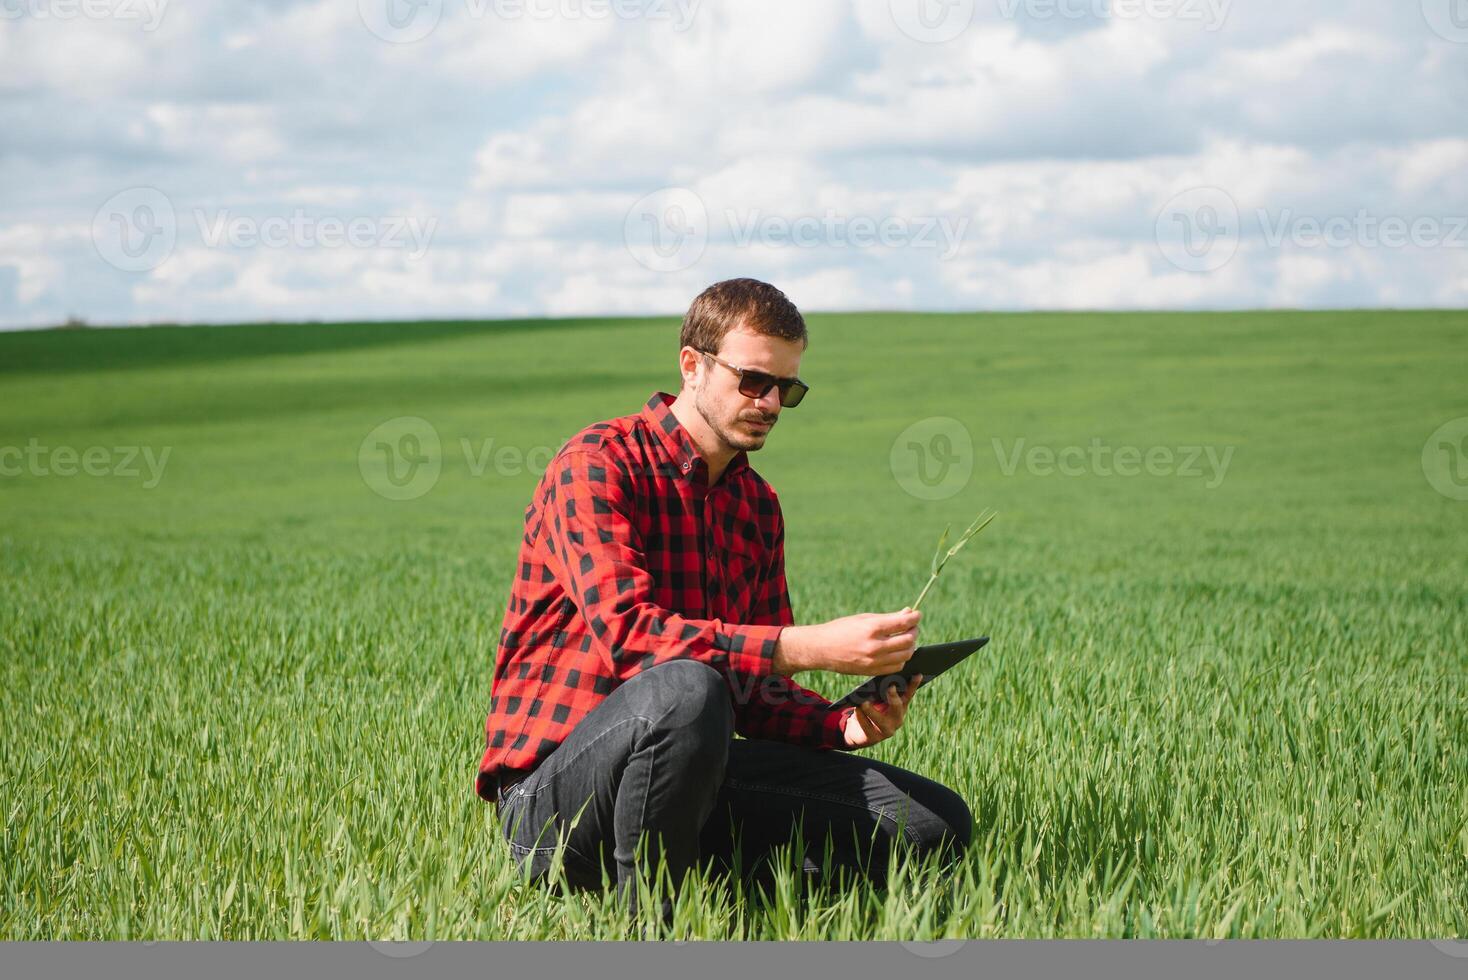 jordbrukare i röd kontrollerade skjorta använder sig av läsplatta på vete fält. applicering modern teknologi och tillämpningar i lantbruk. begrepp av smart jordbruk och jordbruksnäring. foto